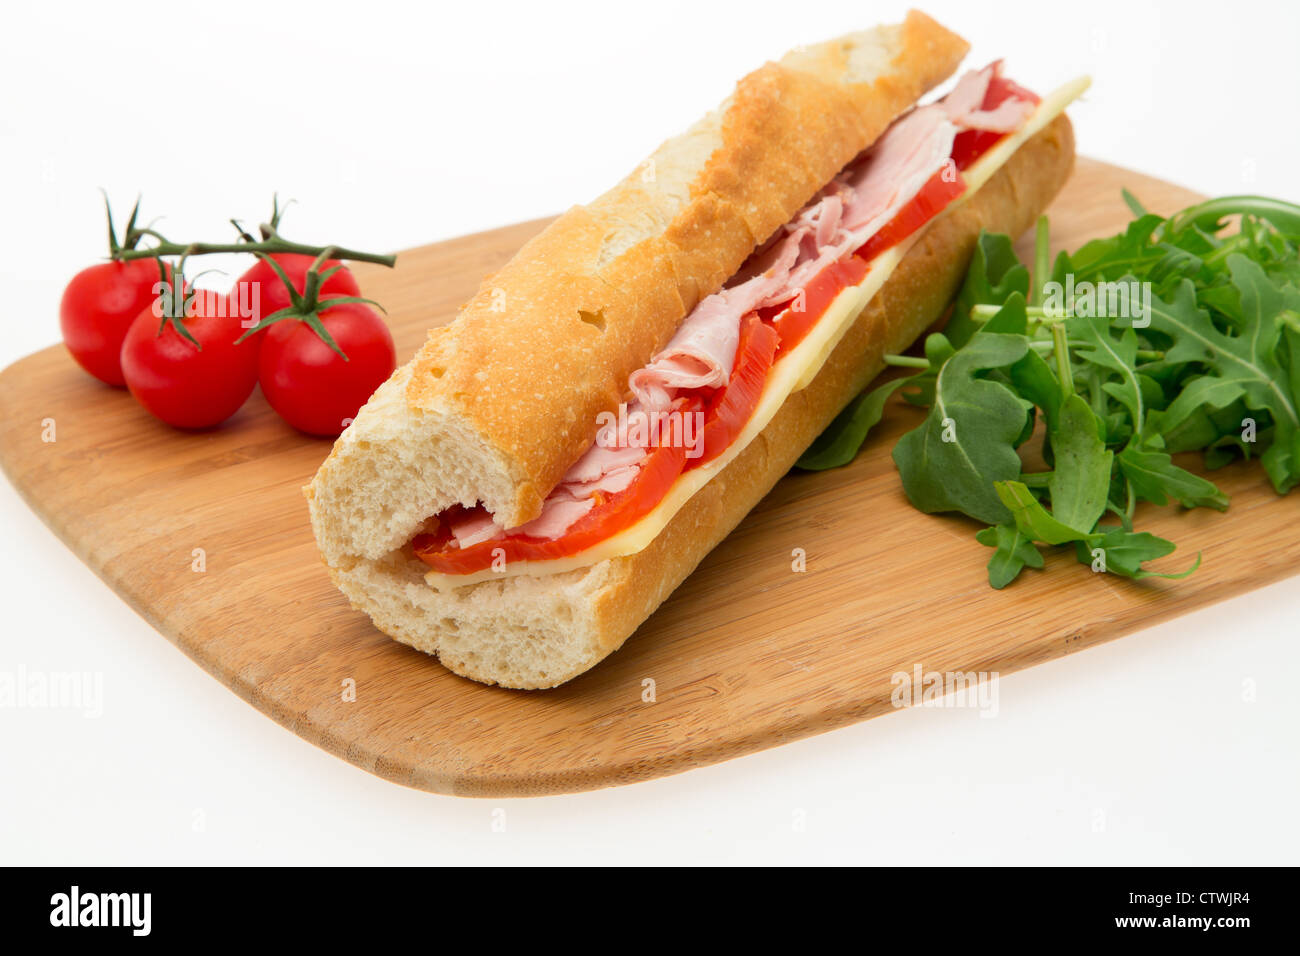 Baguette-sandwich mit Schinken, Käse und Tomaten - Studio gedreht mit einer geringen Tiefe von Feld und weißen Hintergrund Stockfoto